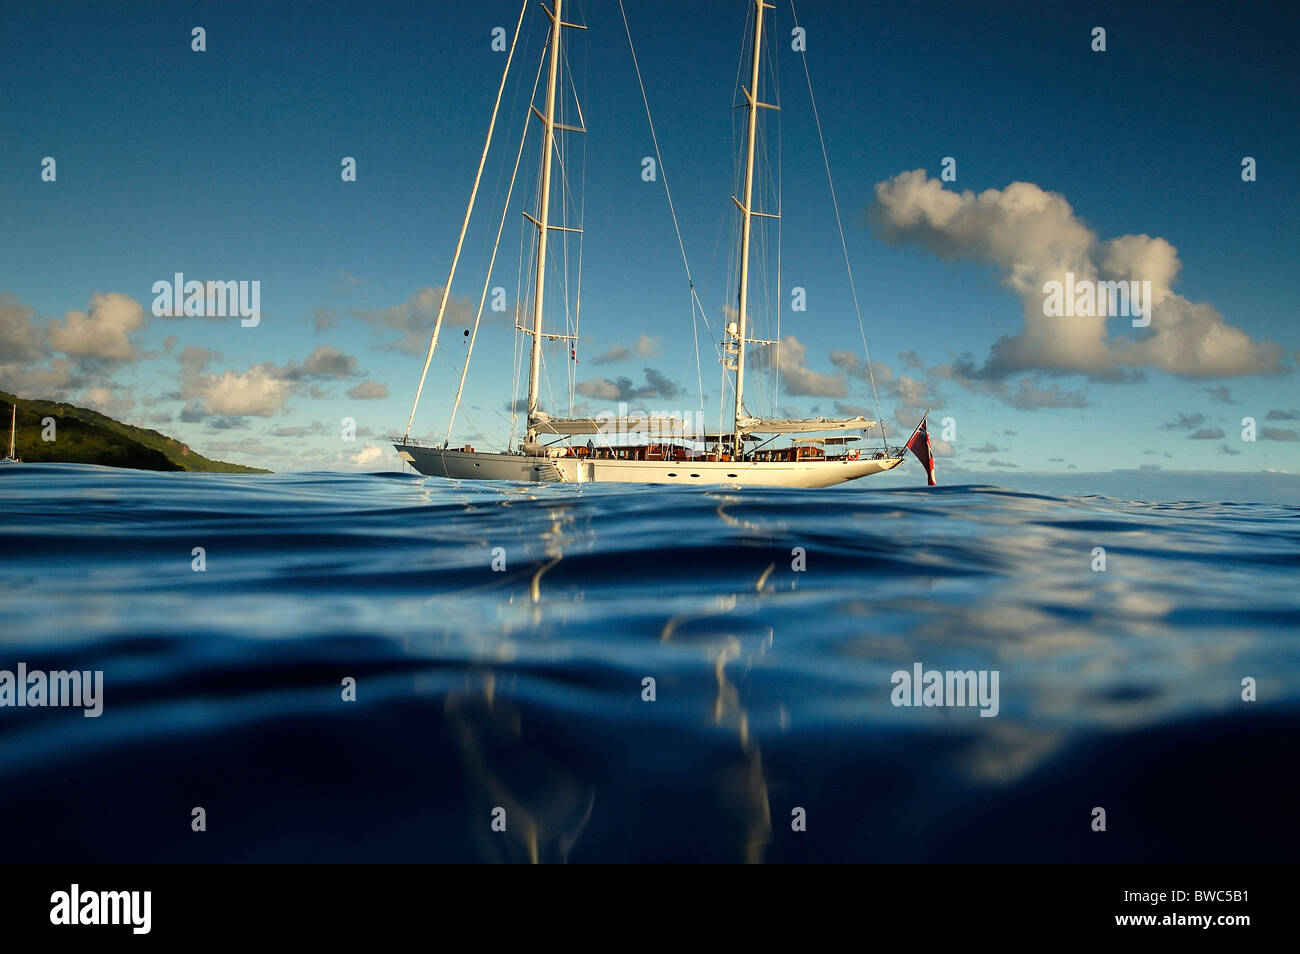 SY "Adele", 180 Fuß Hoek Design, vor der Küste in Französisch-Polynesien, 2006 verankert.  Nicht redaktionelle Verwendungen müssen individuell geklärt werden Stockfoto